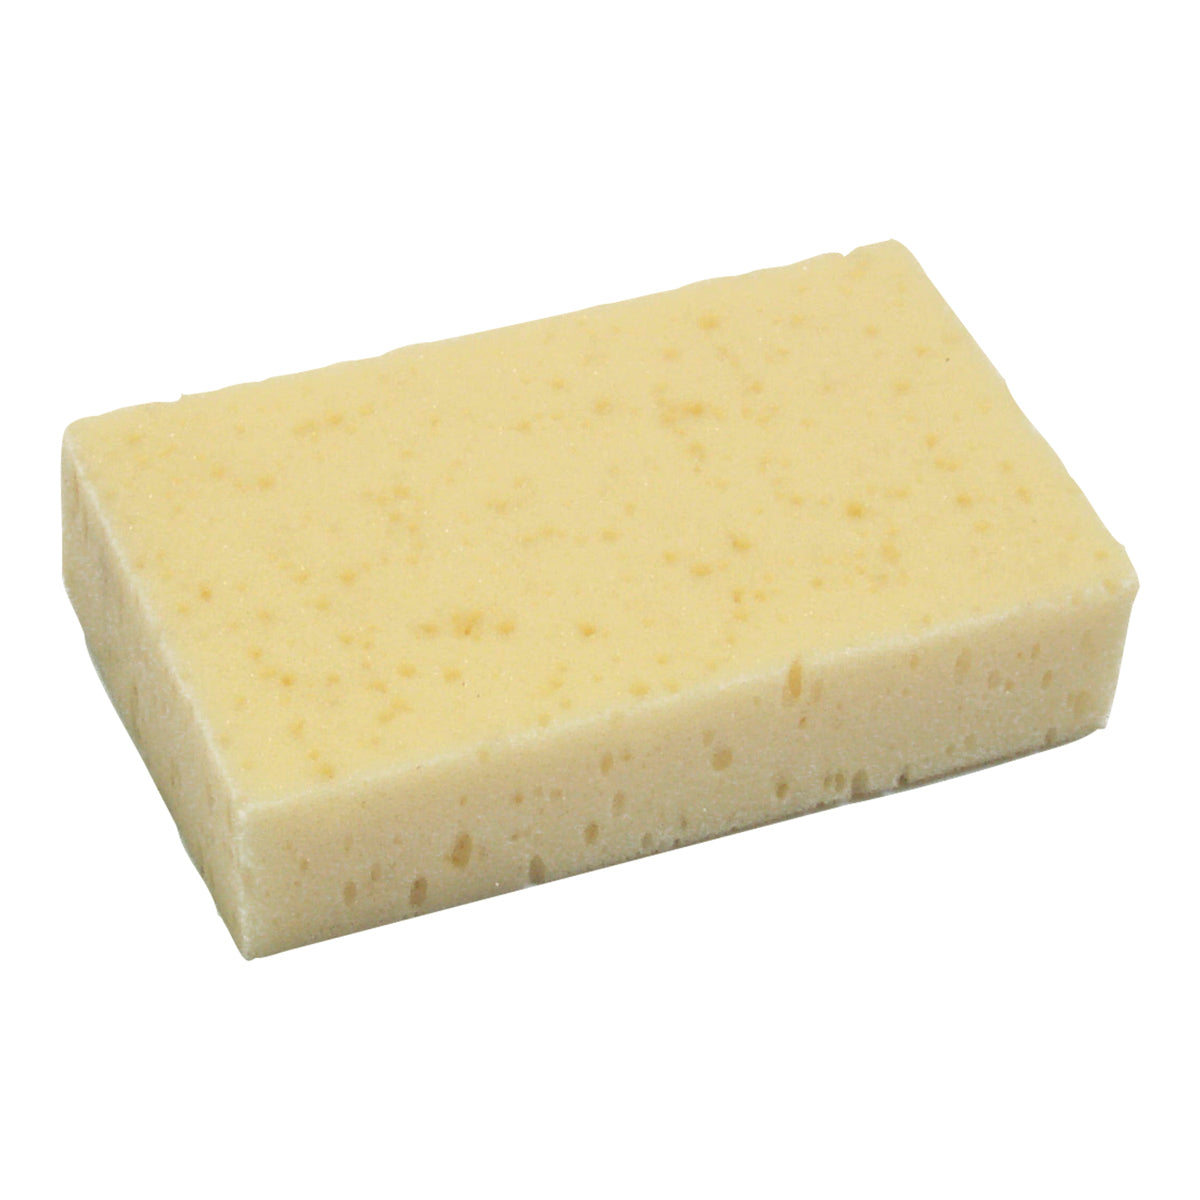 Eureka Grooming Sponge